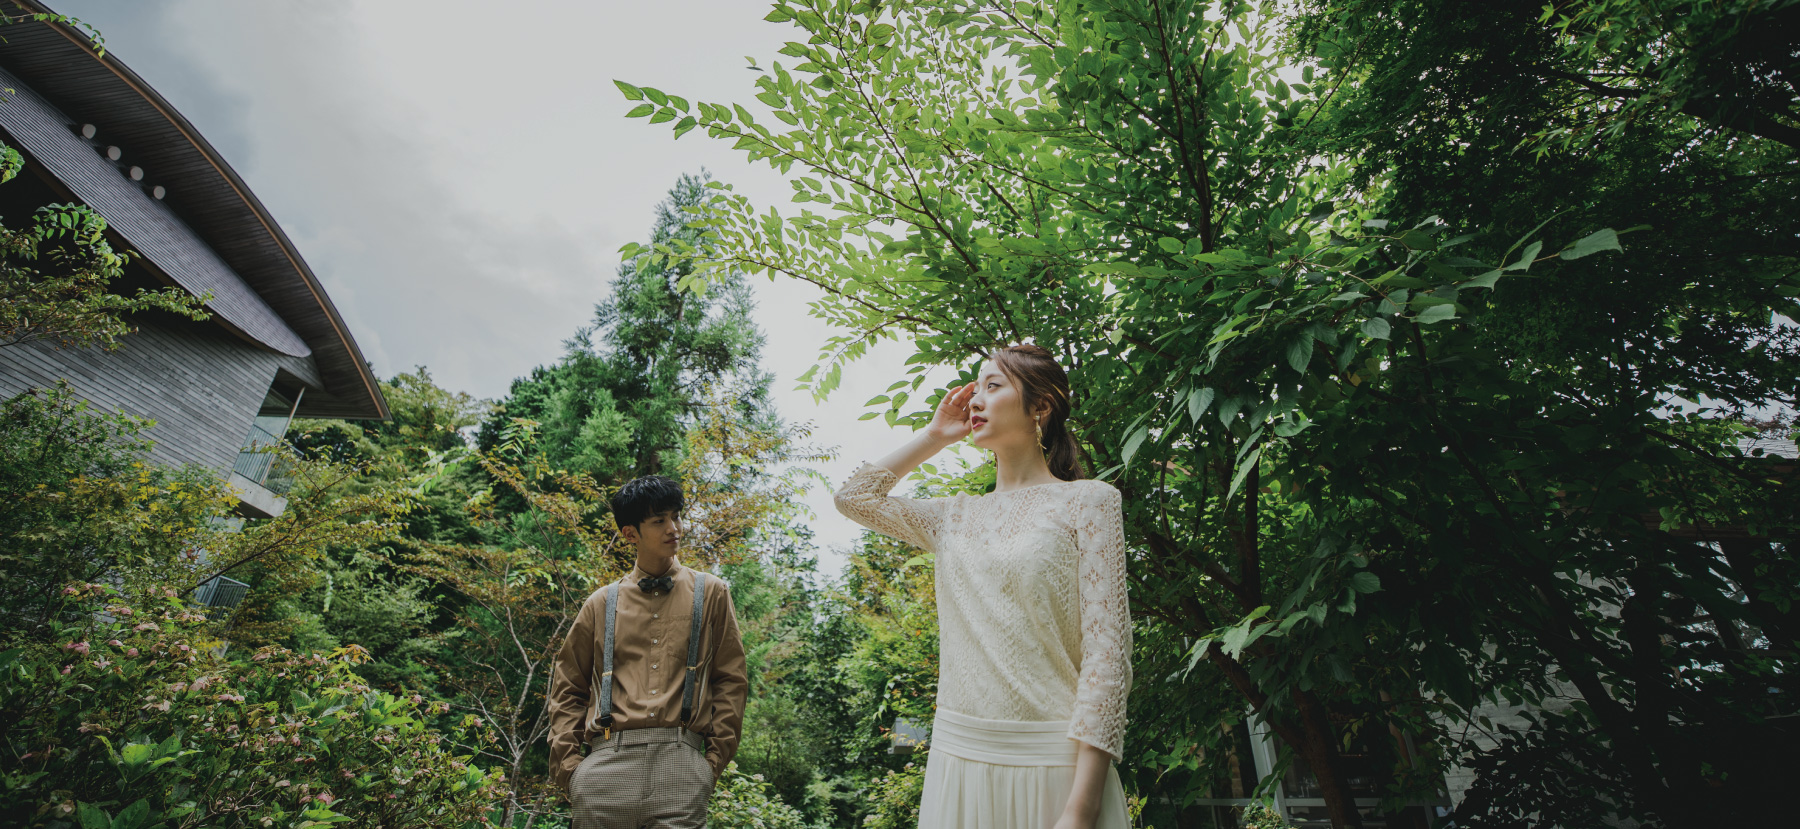 箱根リトリートの太陽が輝き、自然あふれる道をゆっくりと歩く新郎新婦の2人